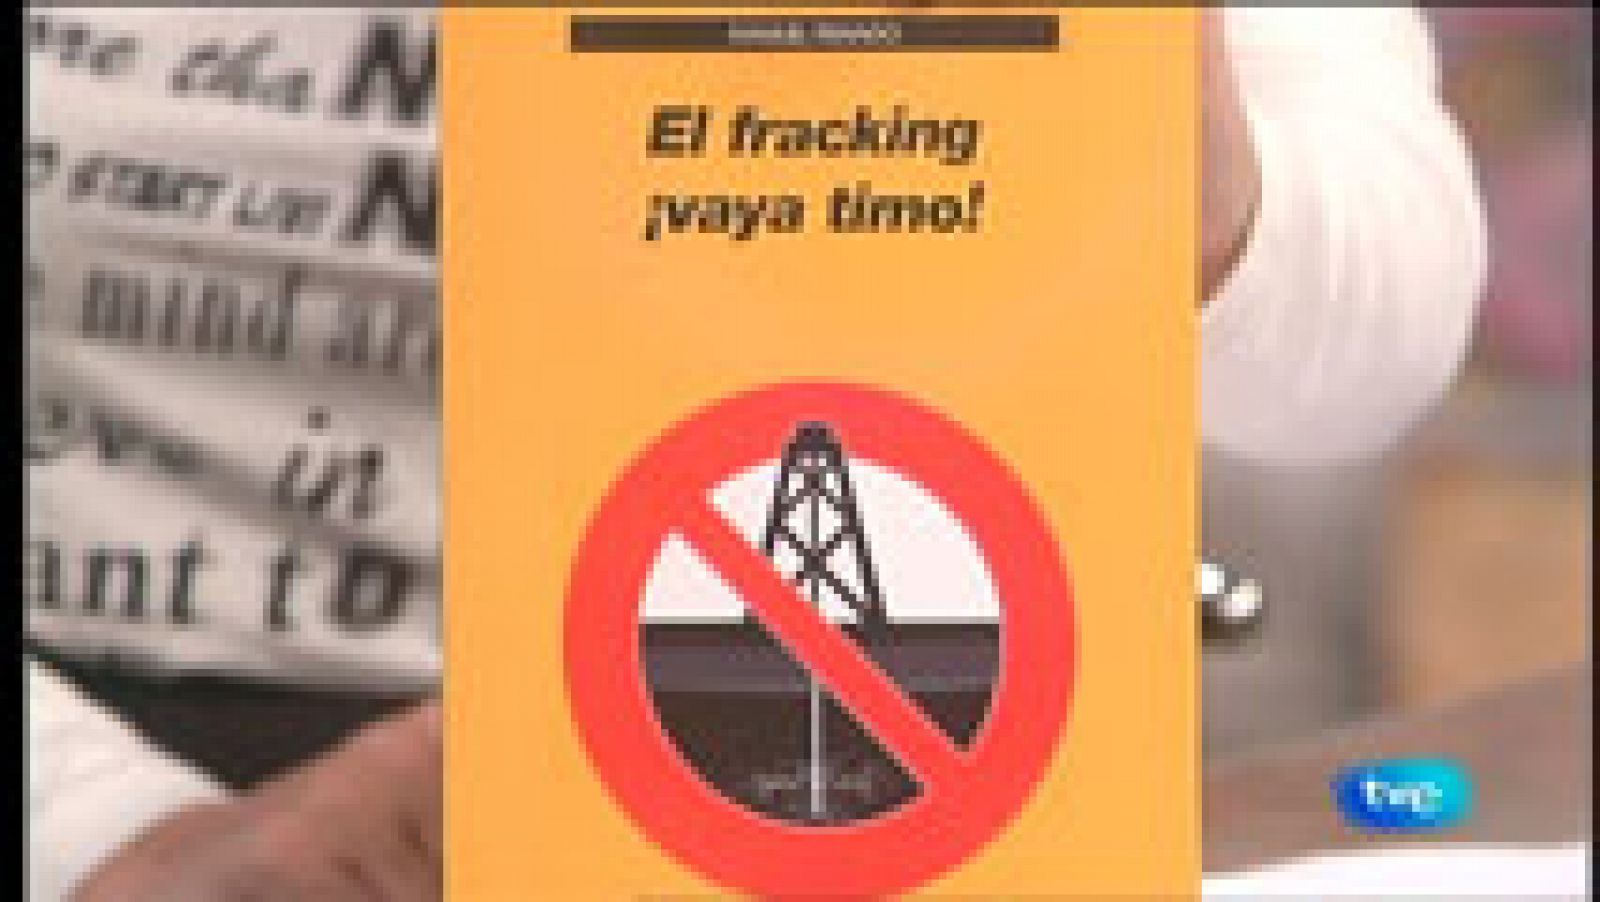 La aventura del Saber: La Aventura del Saber. Manuel Peinado. El fracking,  vaya timo | RTVE